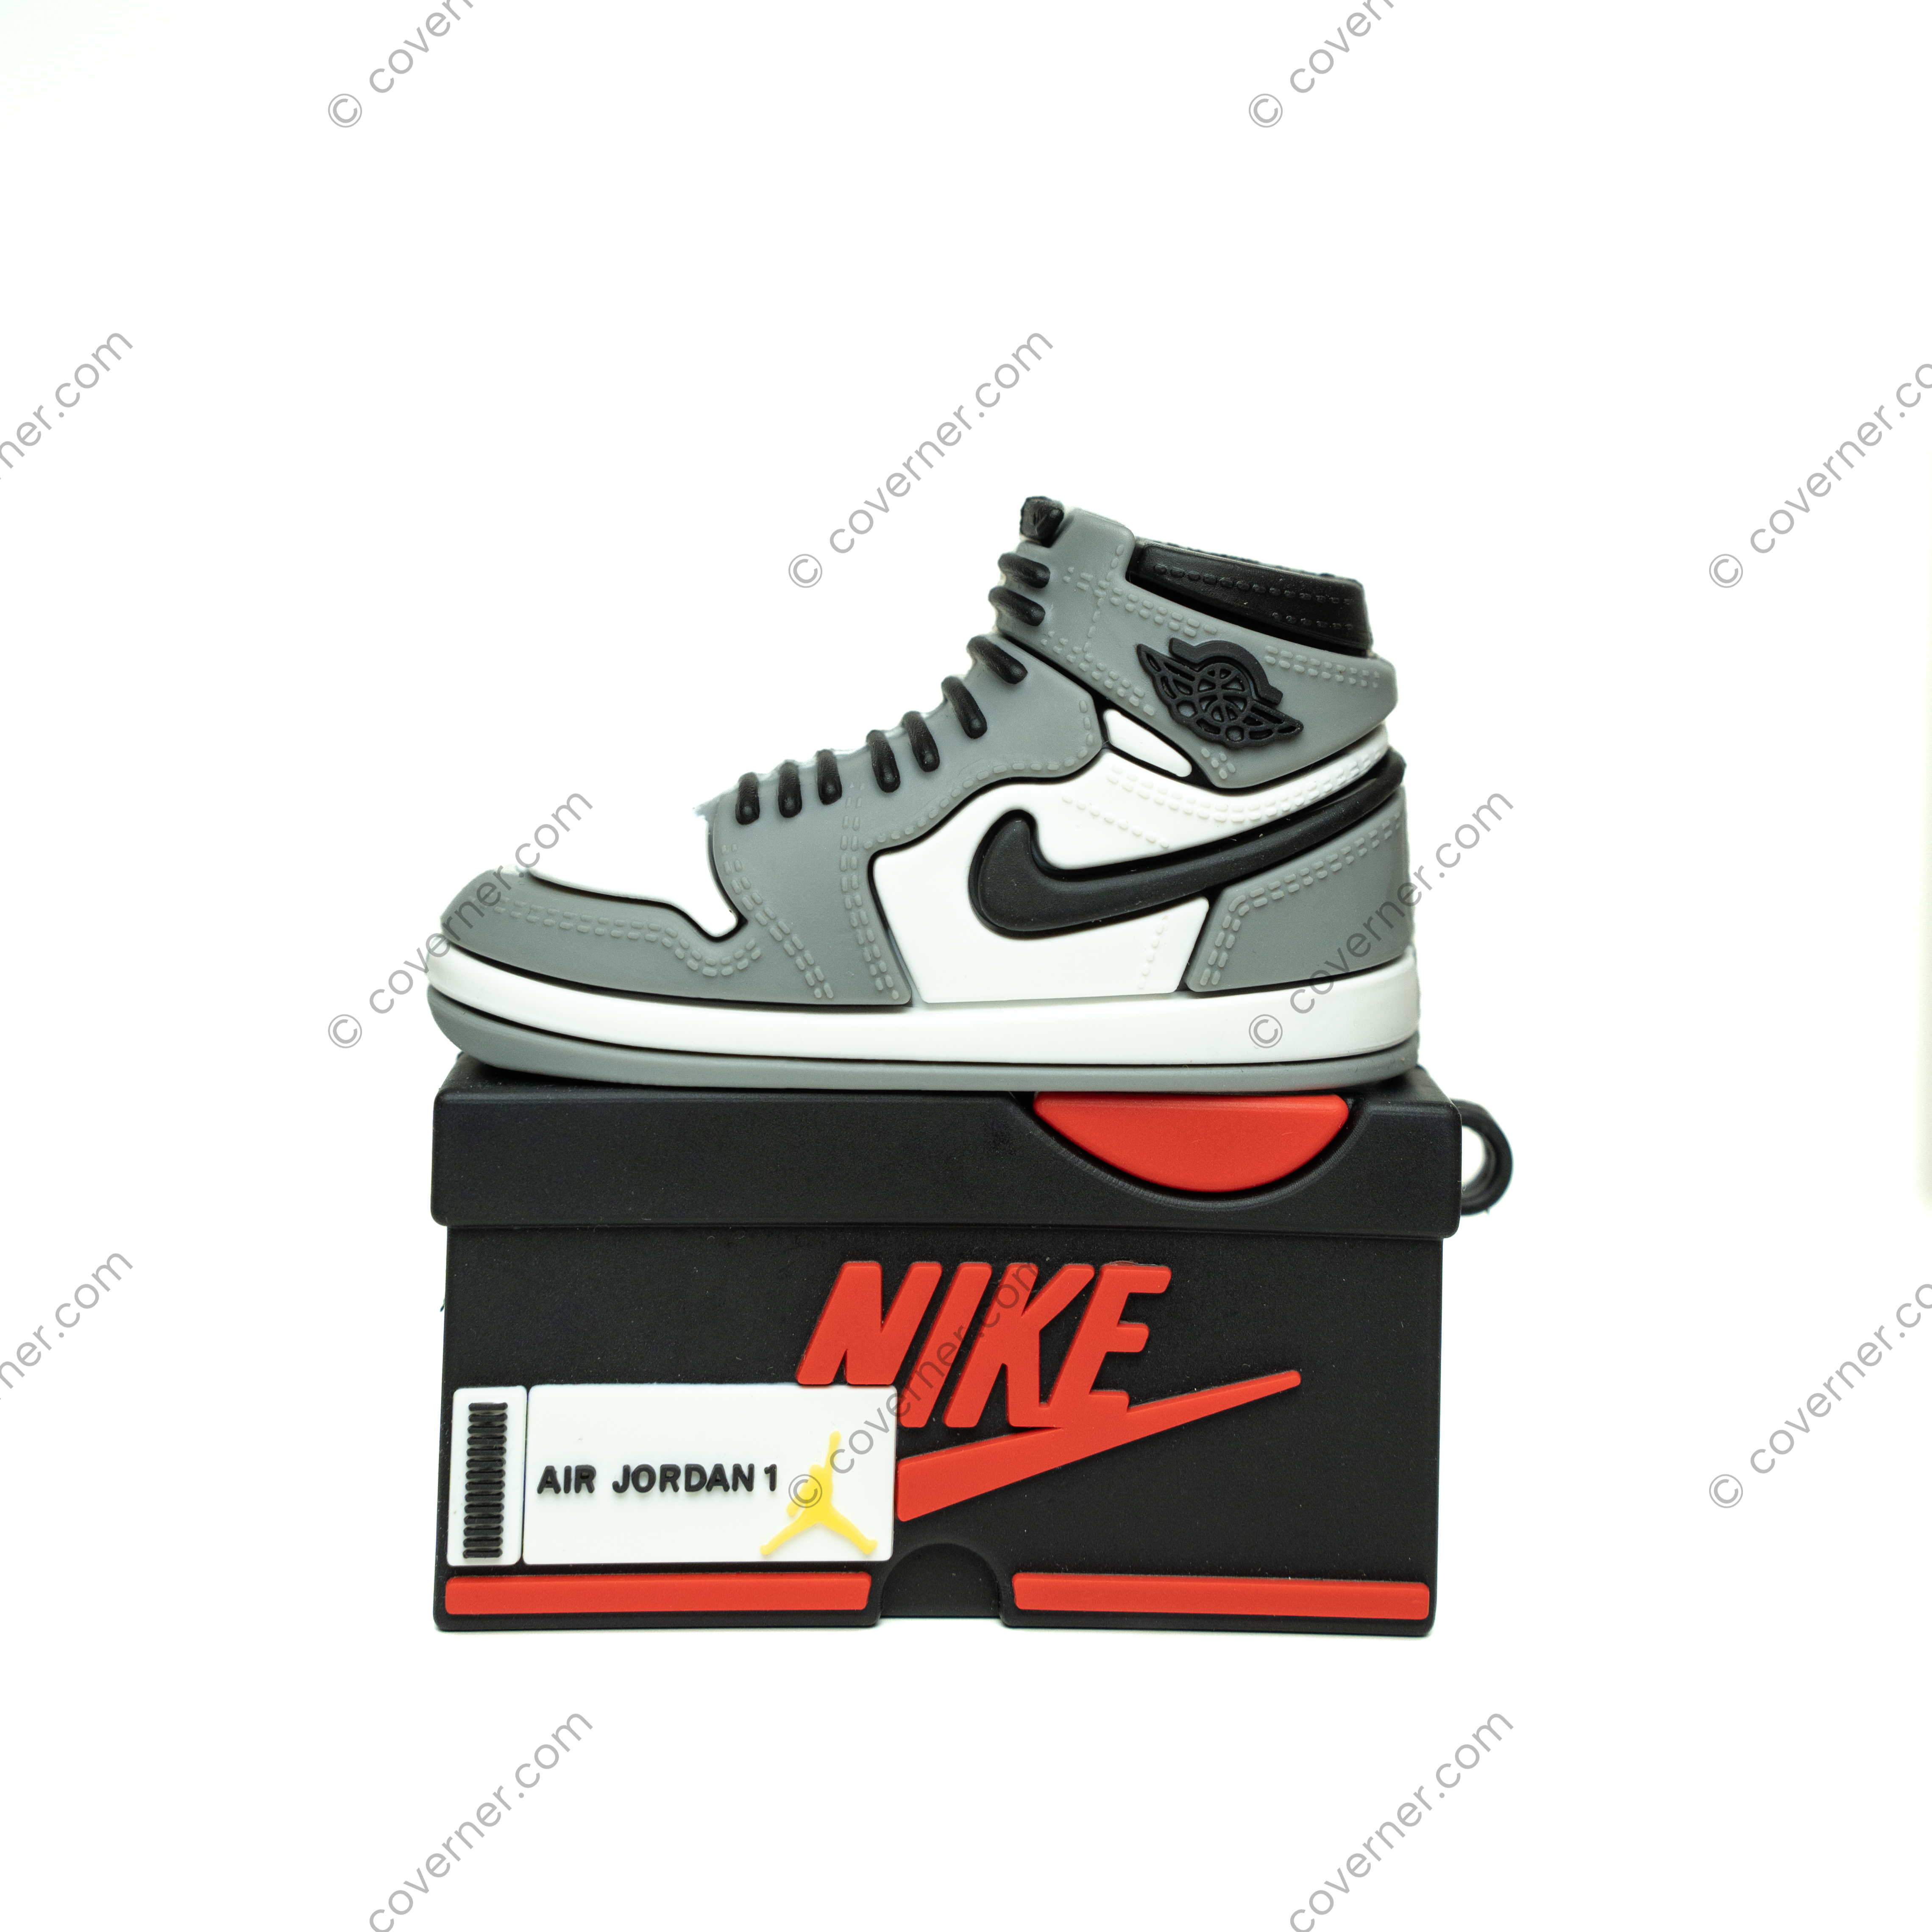 Sneaker Airpods Cases - Air Jordan 1 Grey